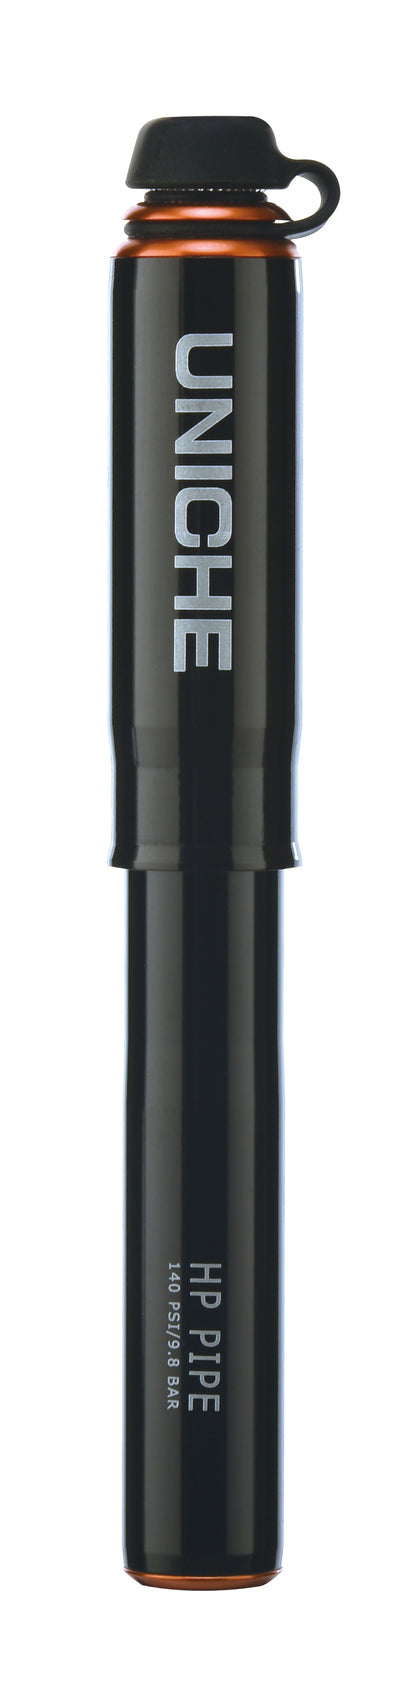 Uniche High Pressure Mini Pump-S - Black - Cyclop.in